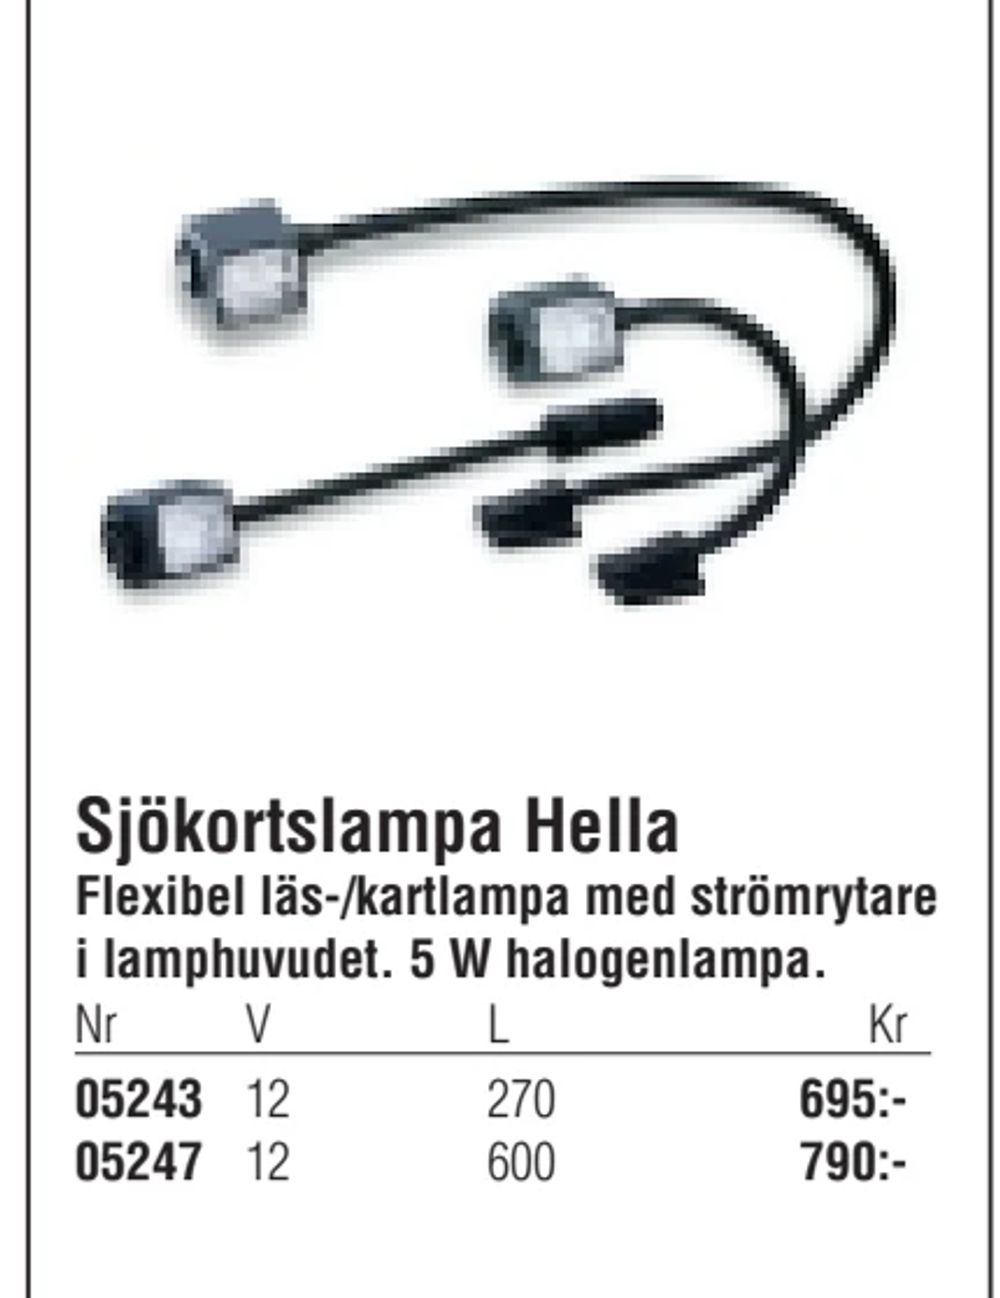 Erbjudanden på Sjökortslampa Hella från Erlandsons Brygga för 695 kr